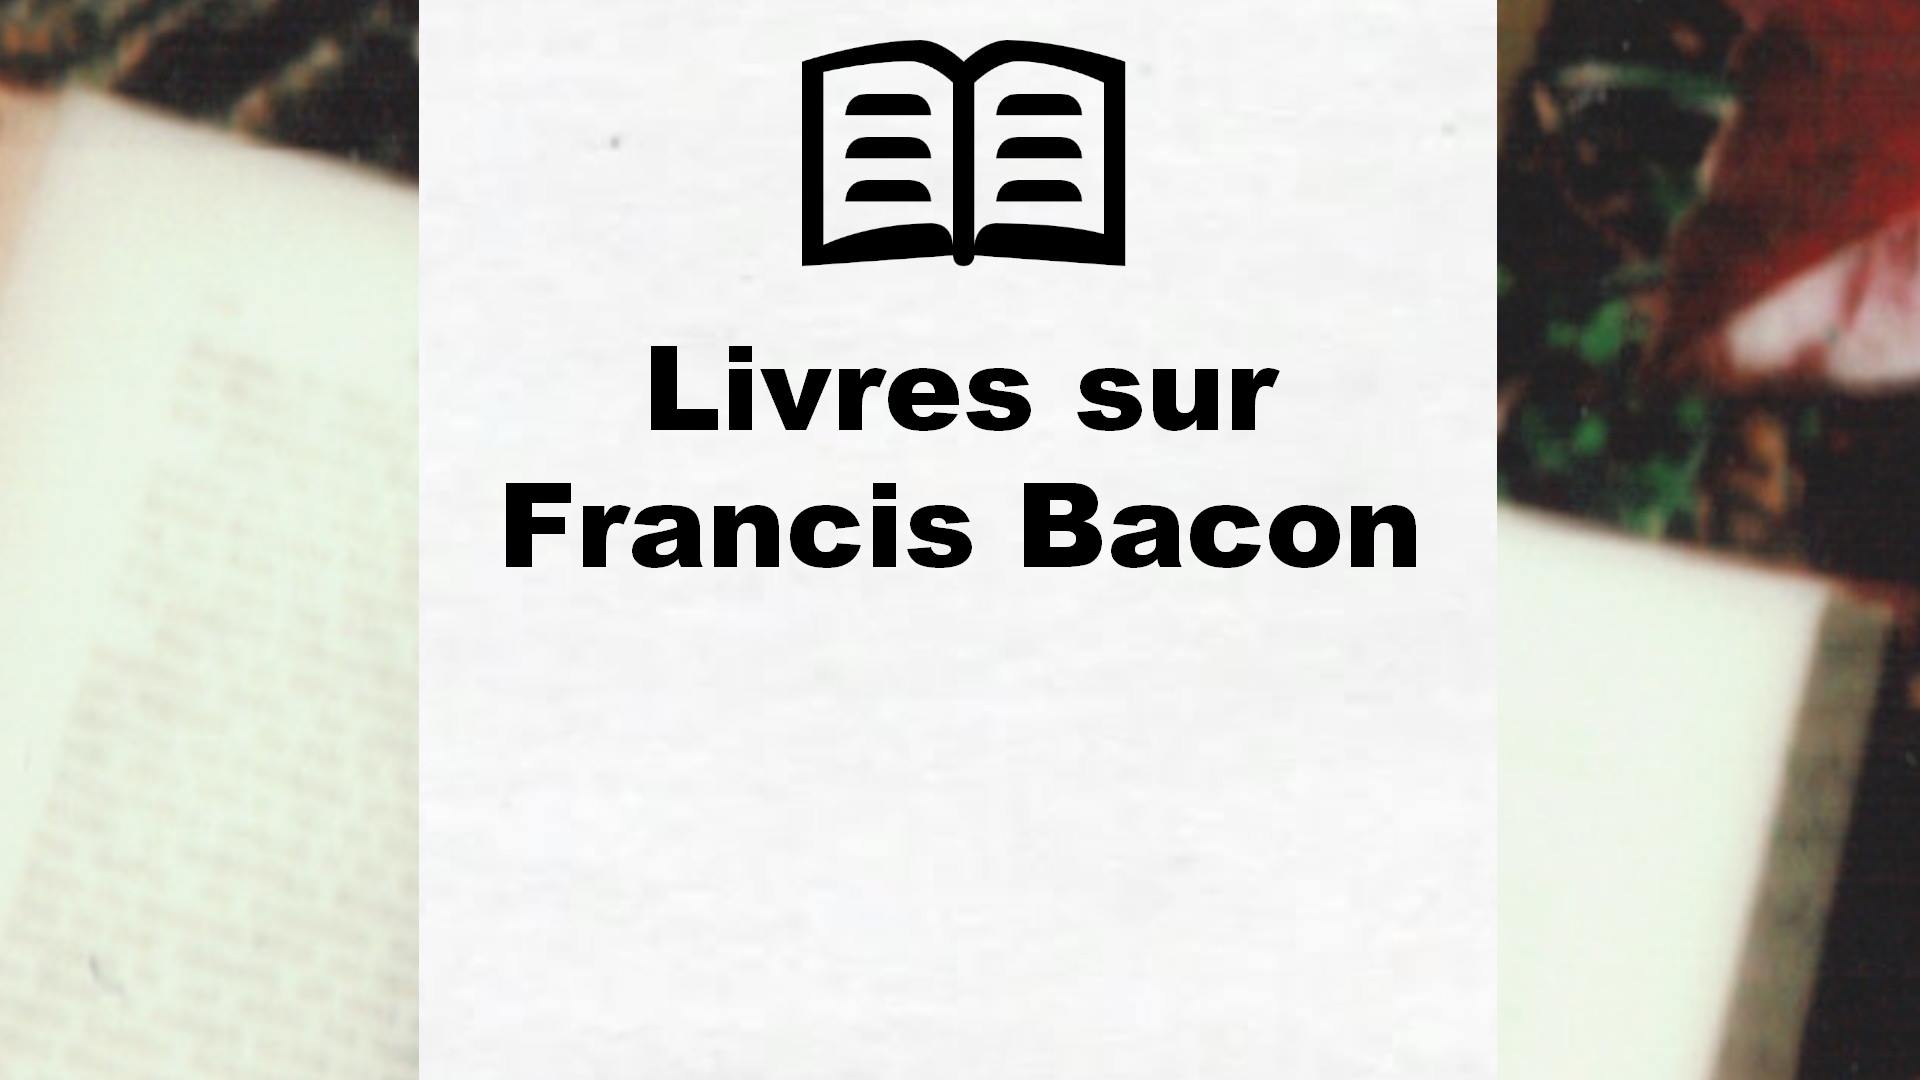 Livres sur Francis Bacon